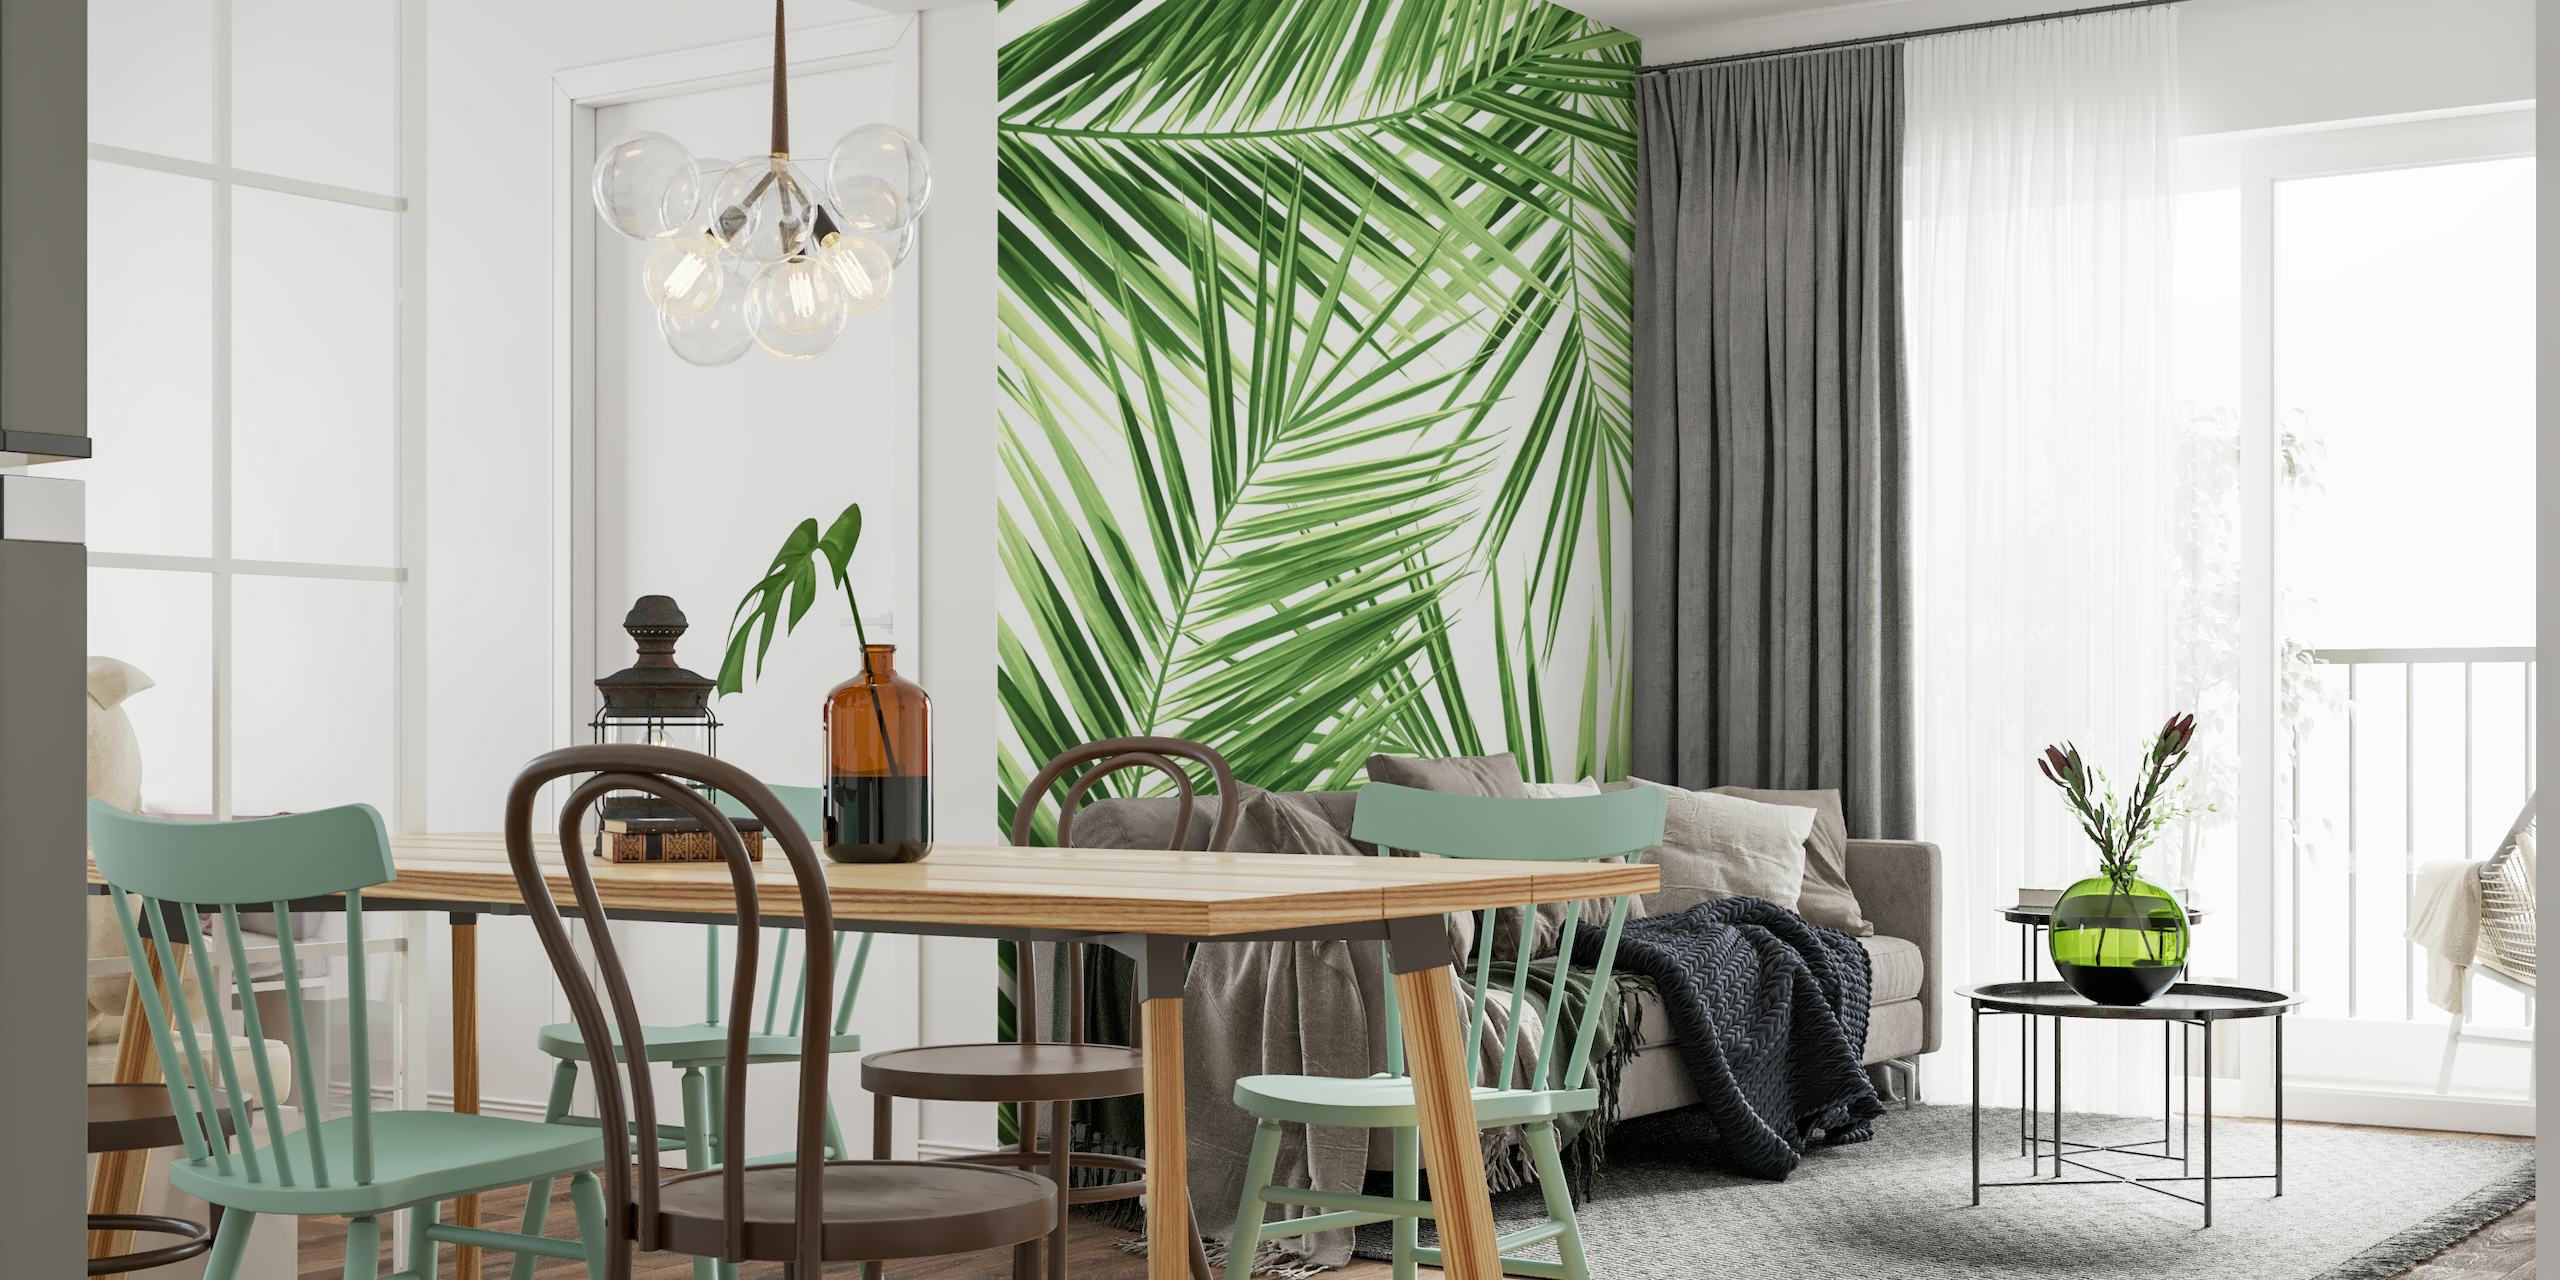 Vihreä palmulehtikuvioinen seinämaalaus trooppiseen teemaan